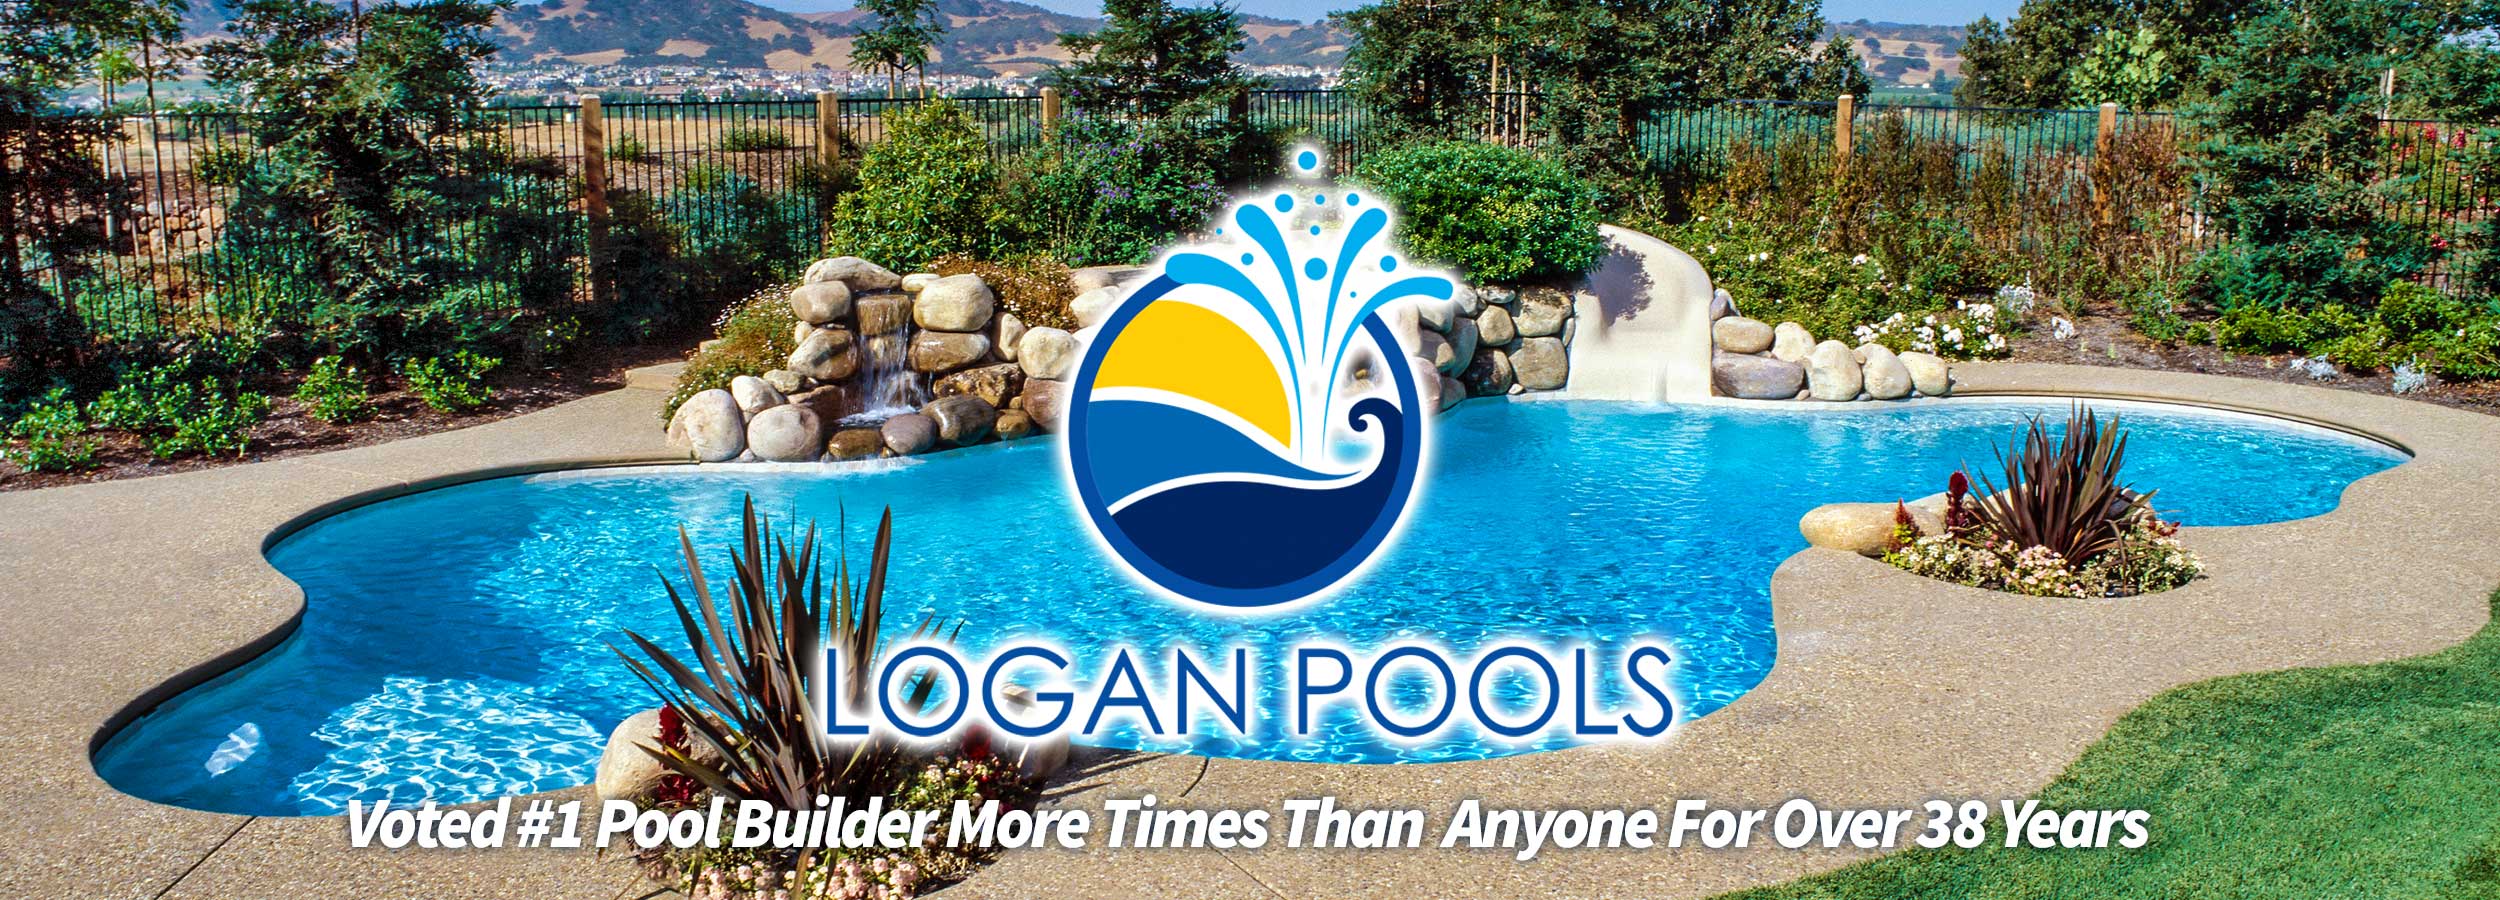 Logan Pools